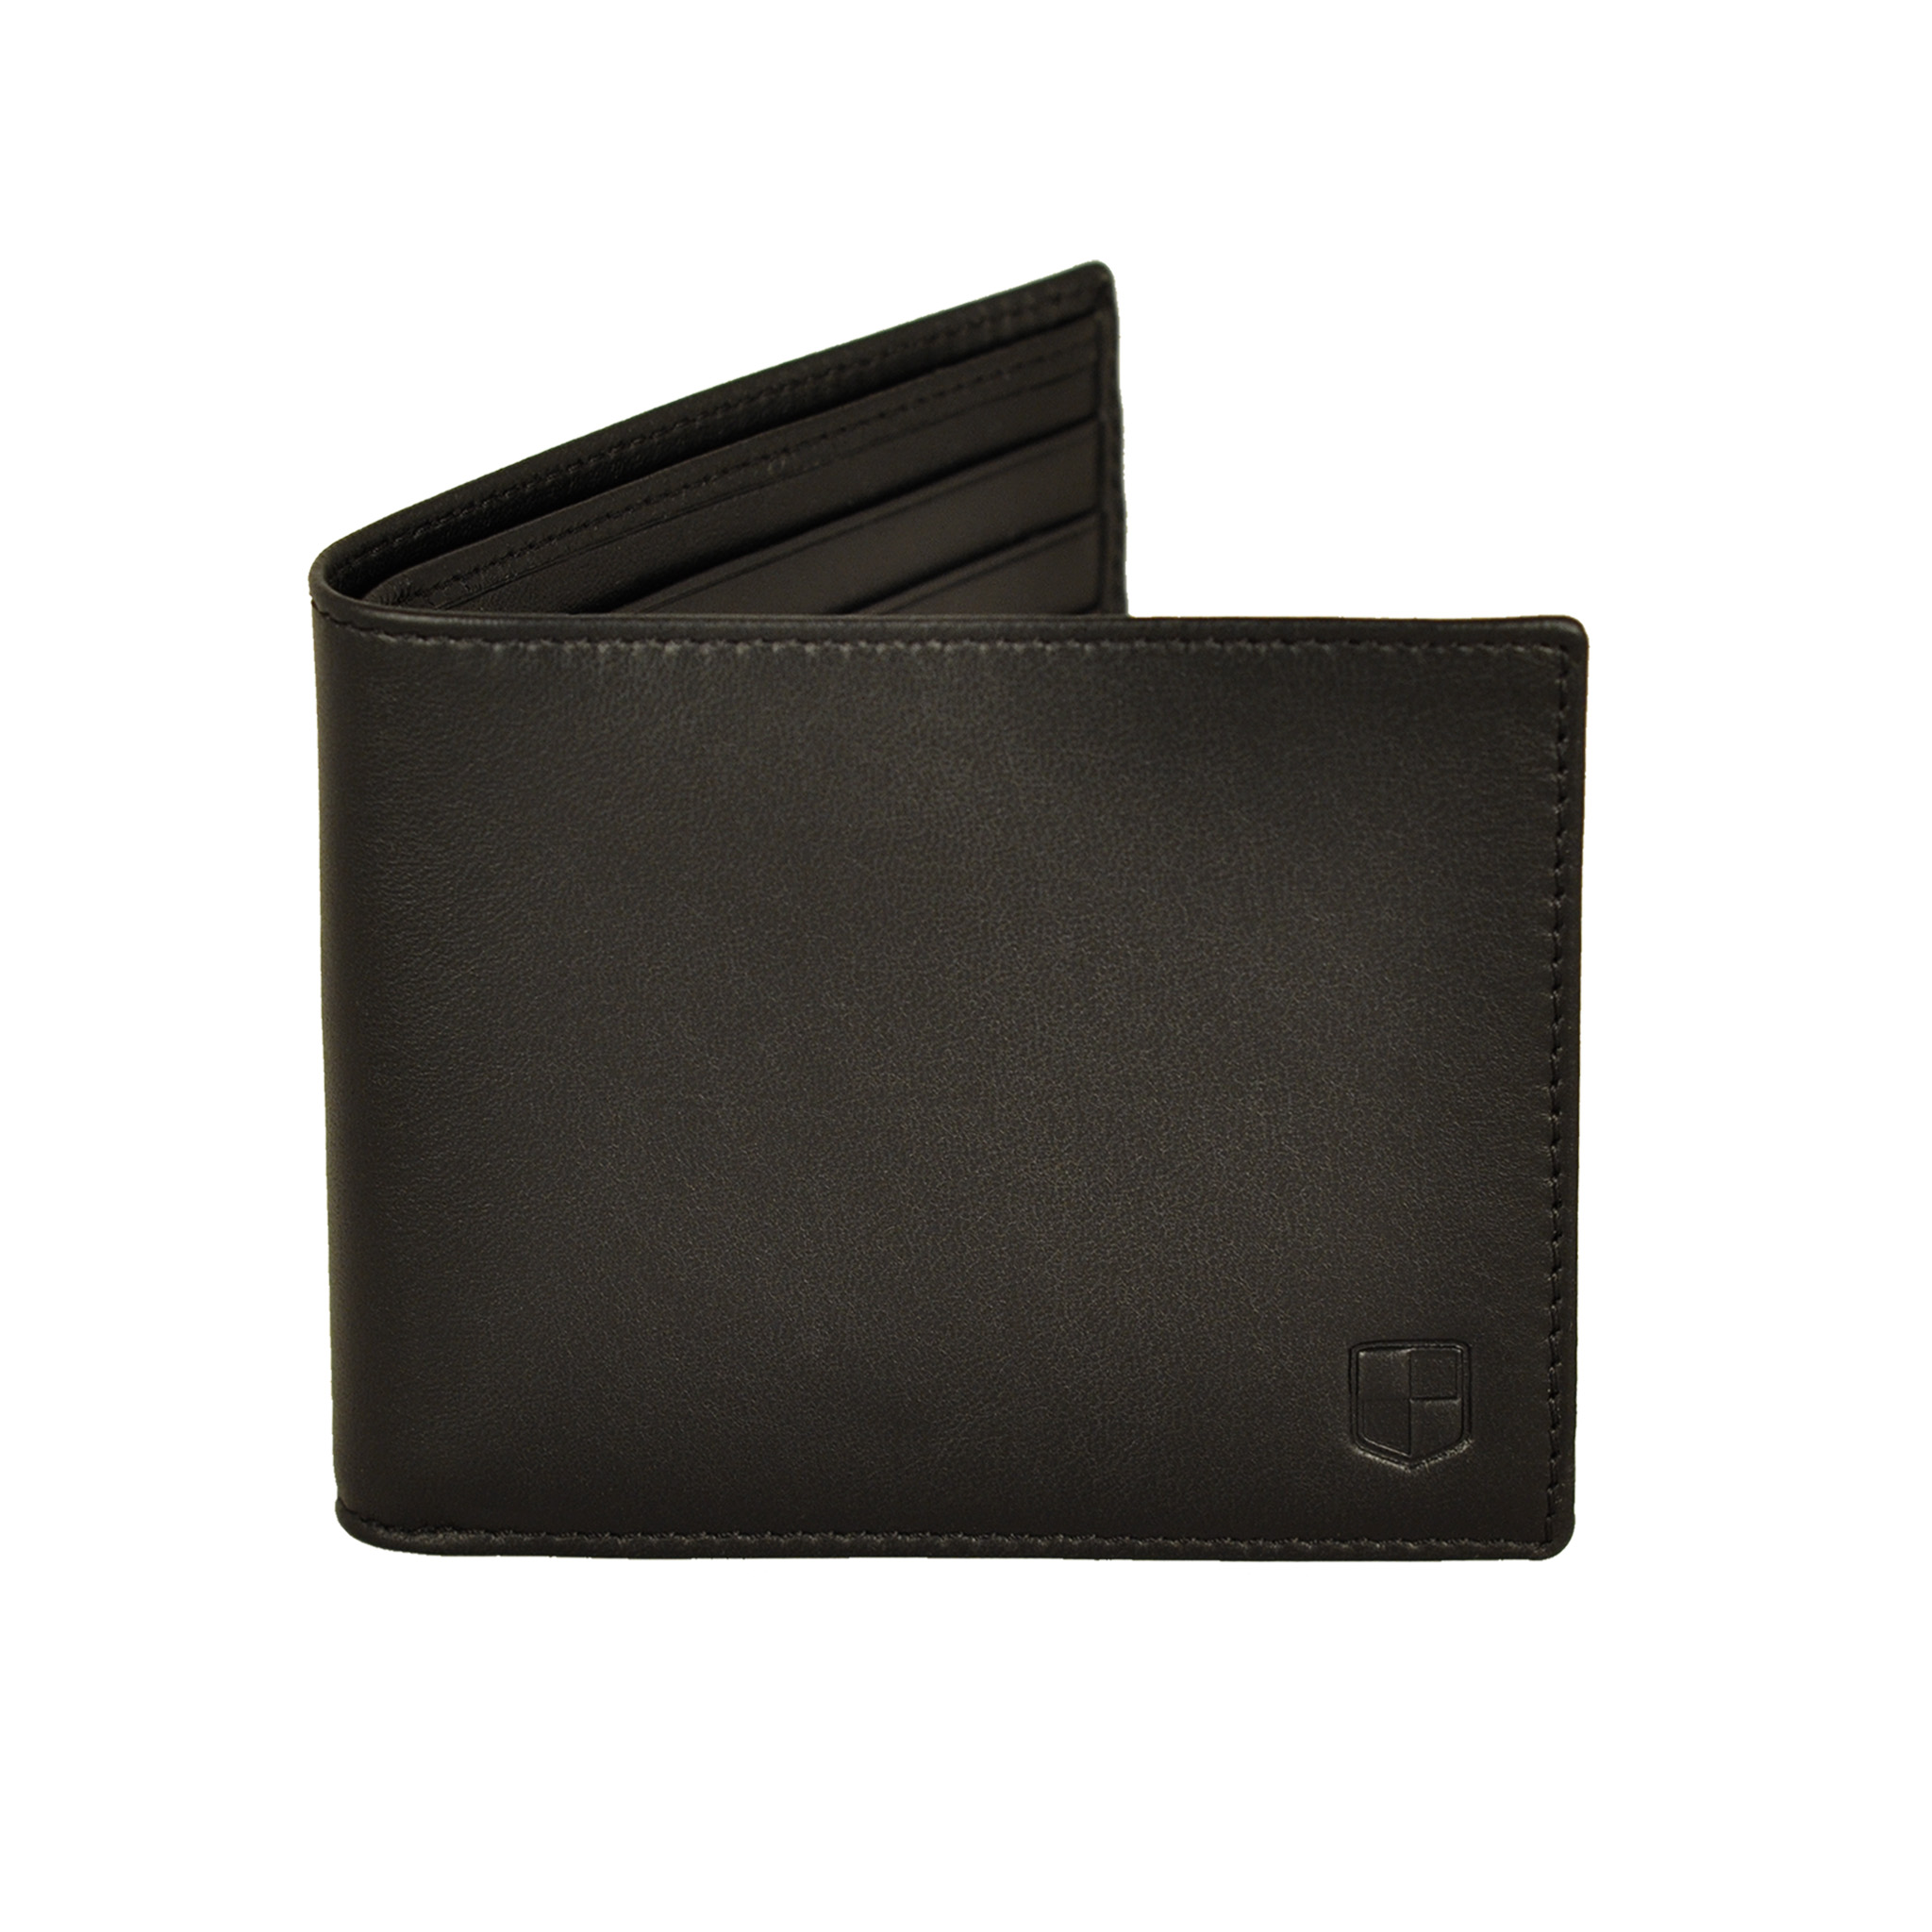 Black lambskin billfold wallet